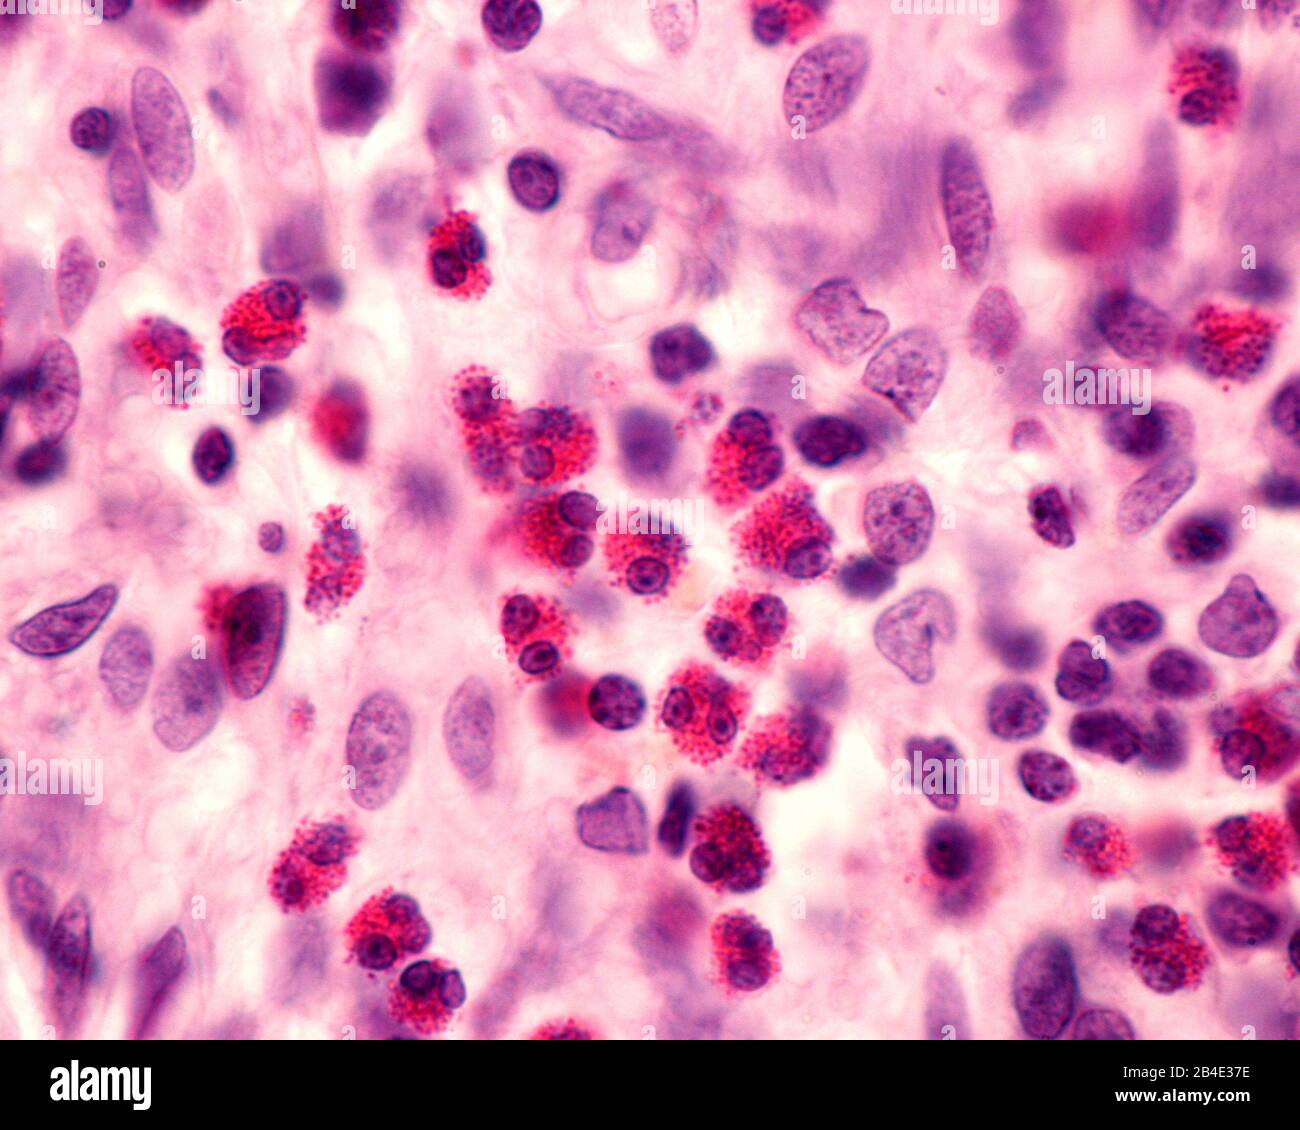 Granulocytes éosinophiles dans un infiltrat inflammatoire. Ce type de globules blancs est responsable de la lutte contre les parasites et joue un rôle dans le méchan Banque D'Images